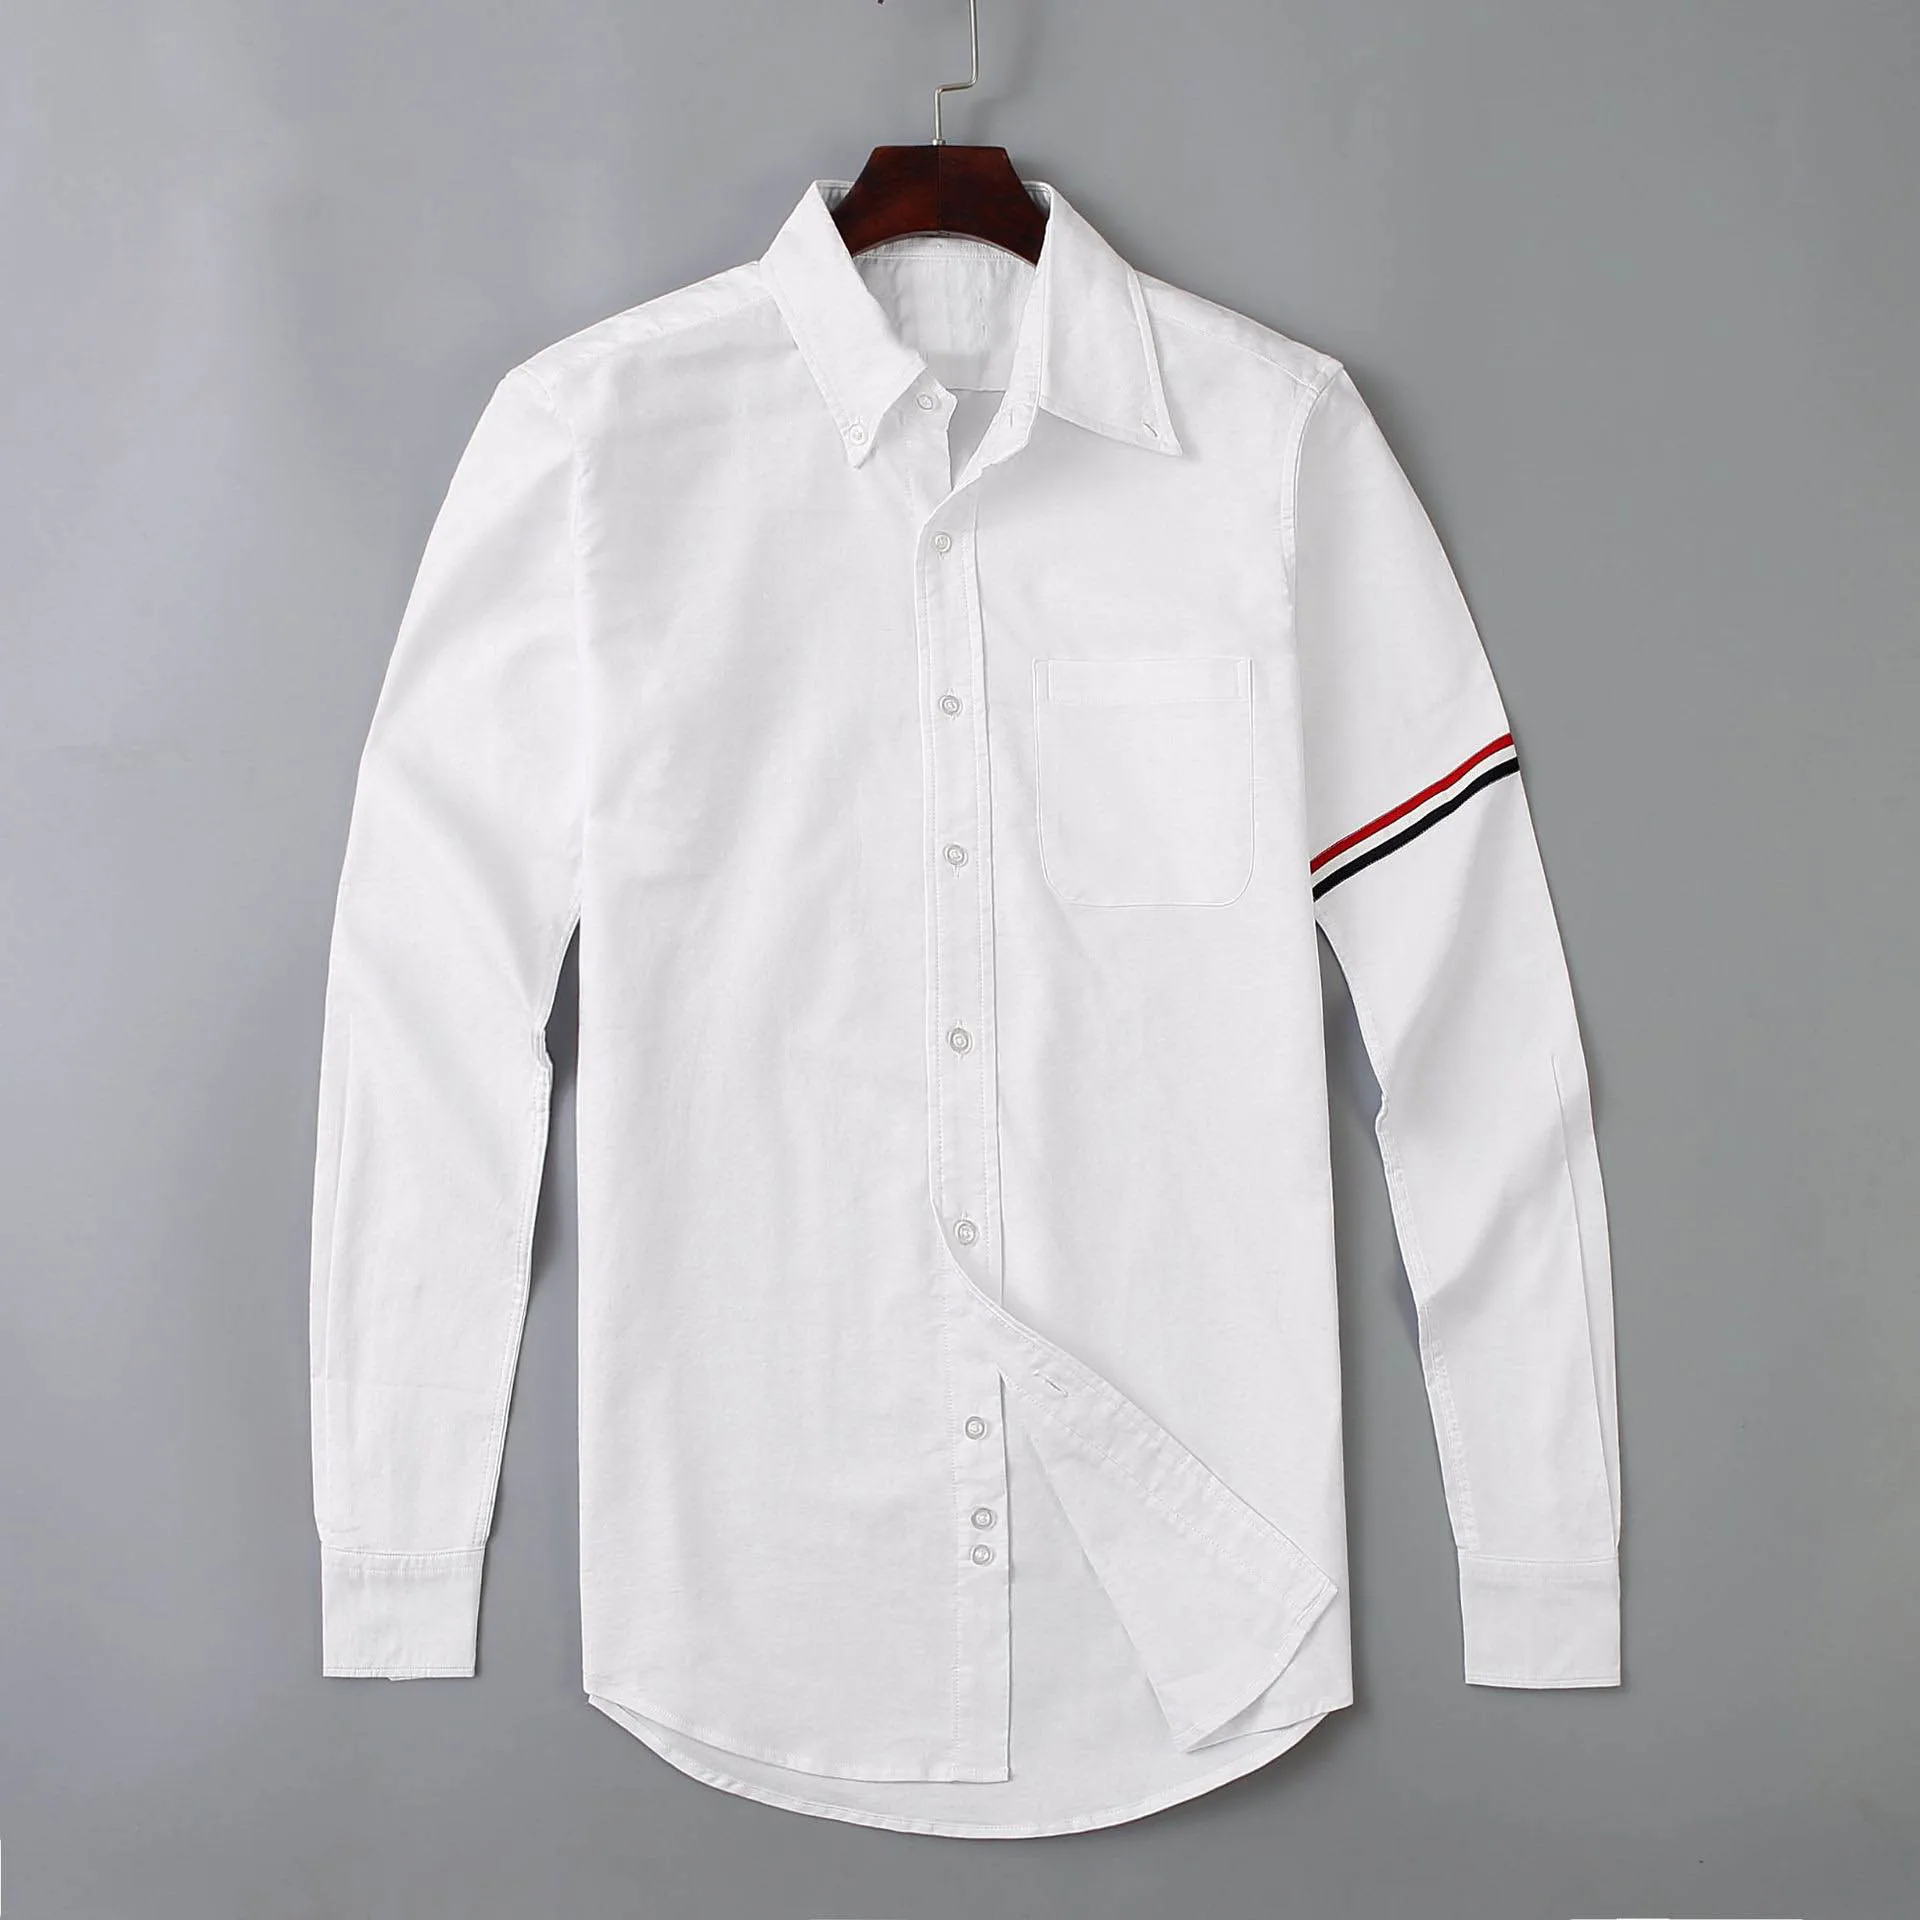 Novo 2021 Homens de Oxford Clássico Colorido listrado de Moda de Algodão, Camisas Casuais Camisa de alta qualidade Bolso longa-Top de mangas M 2XL #M52